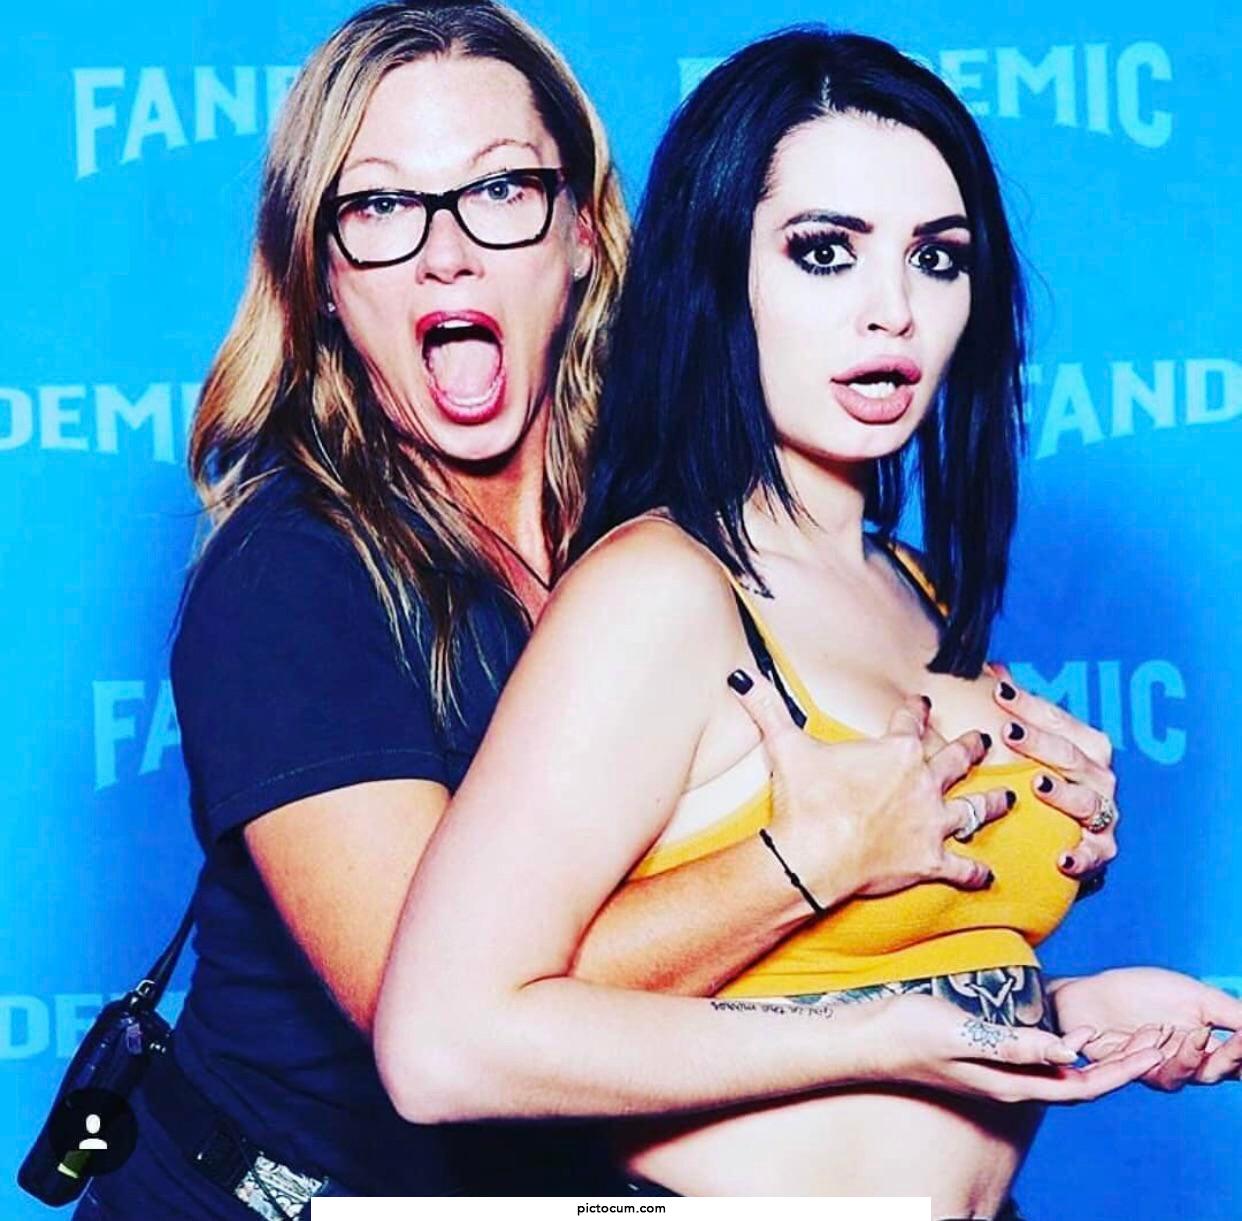 Paige with a fan 😁🤤